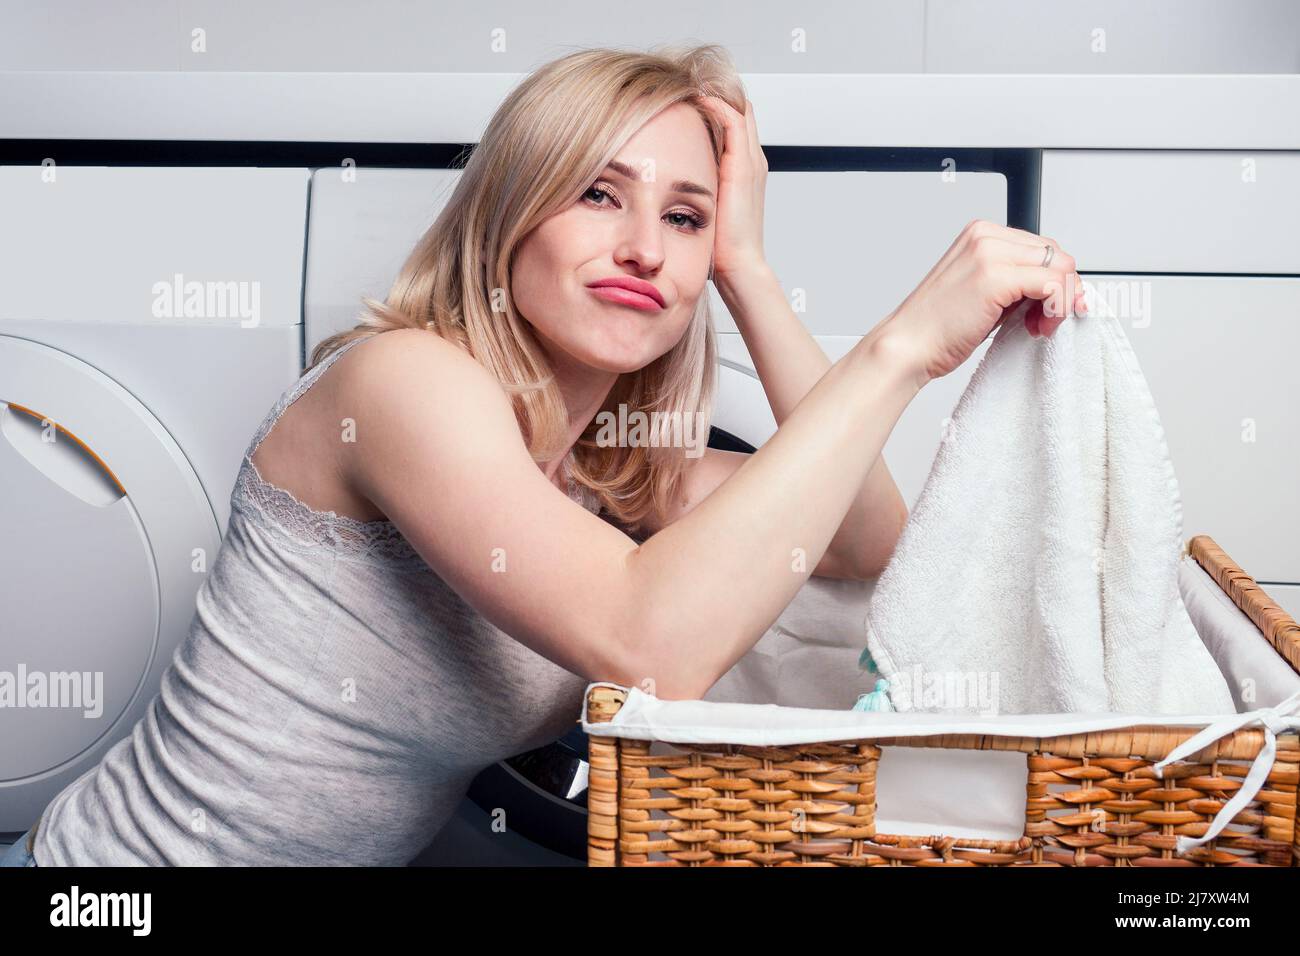 happy blonde female washing clothes feeling happy about soft fresh laundry aroma fabric softener aromatherapy Stock Photo